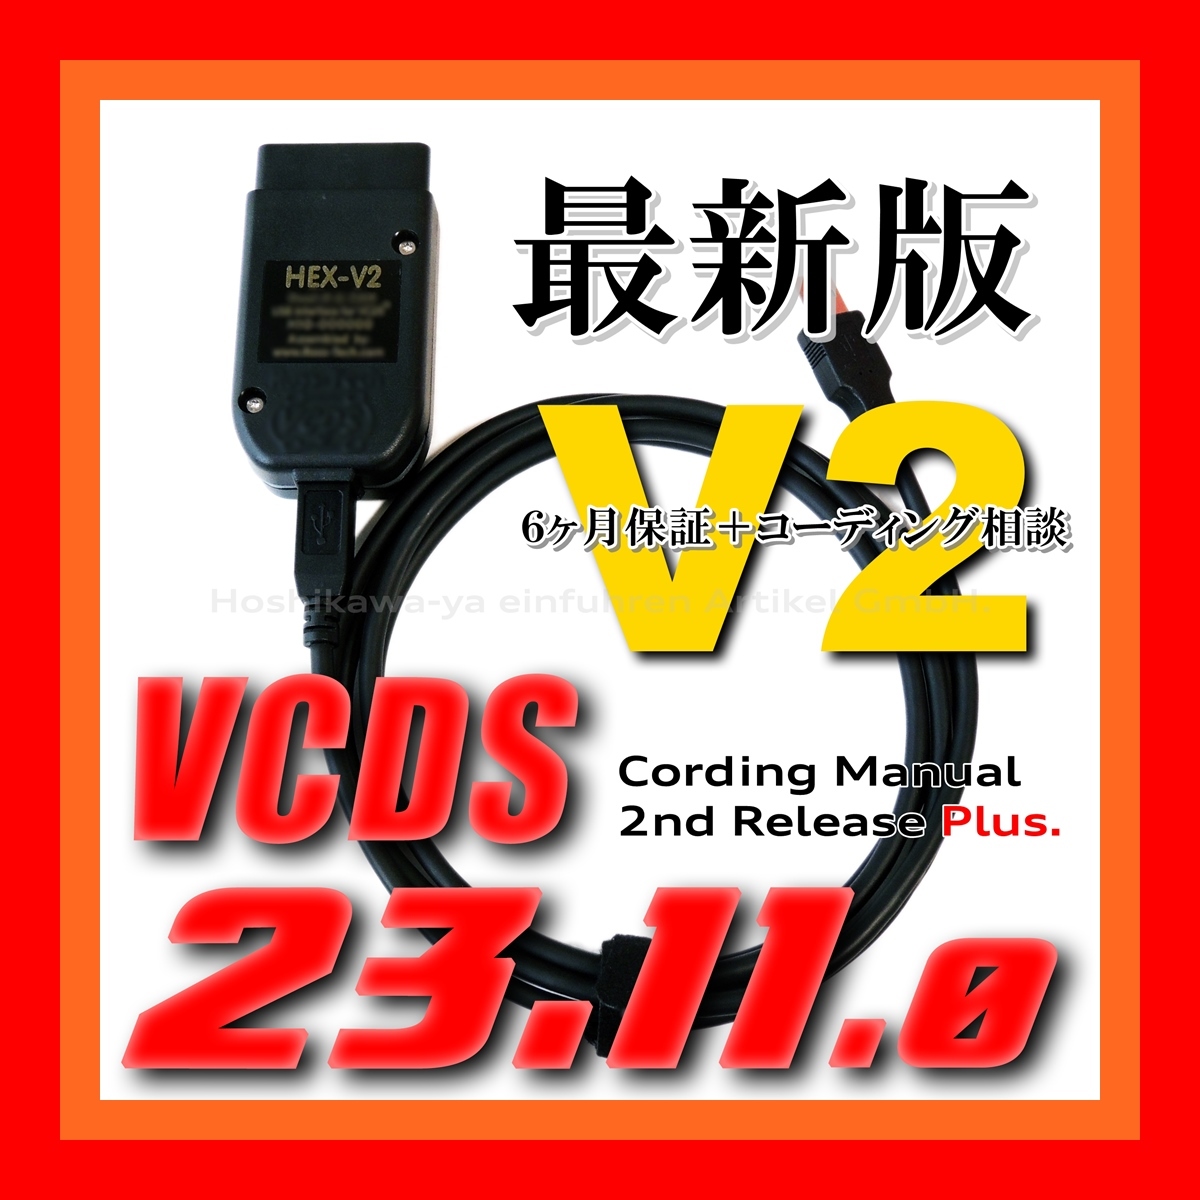 ◇ 【最新版23.11.0・保証付・送料無料】 VCDS 互換ケーブル HEX-V2タイプ 新コーディングマニュアル付 VW ゴルフ7.5 アウディ Audi A3 Q2_画像1